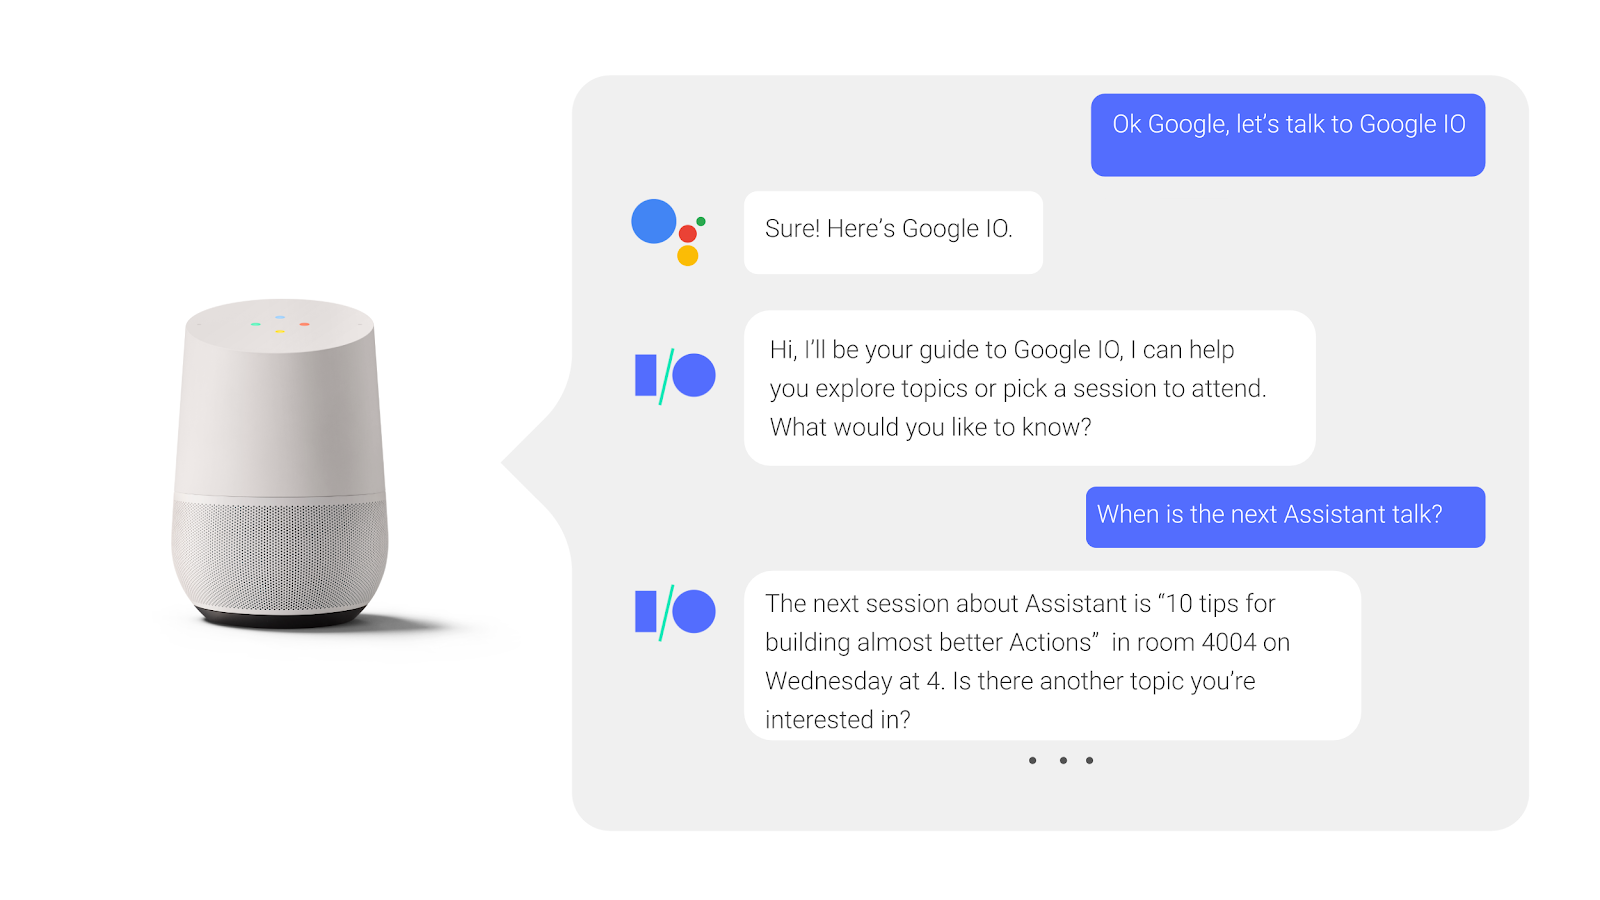 В ходе двусторонней беседы с Google Assistant пользователь спрашивает и получает ответ о том, когда происходит сеанс конференции.